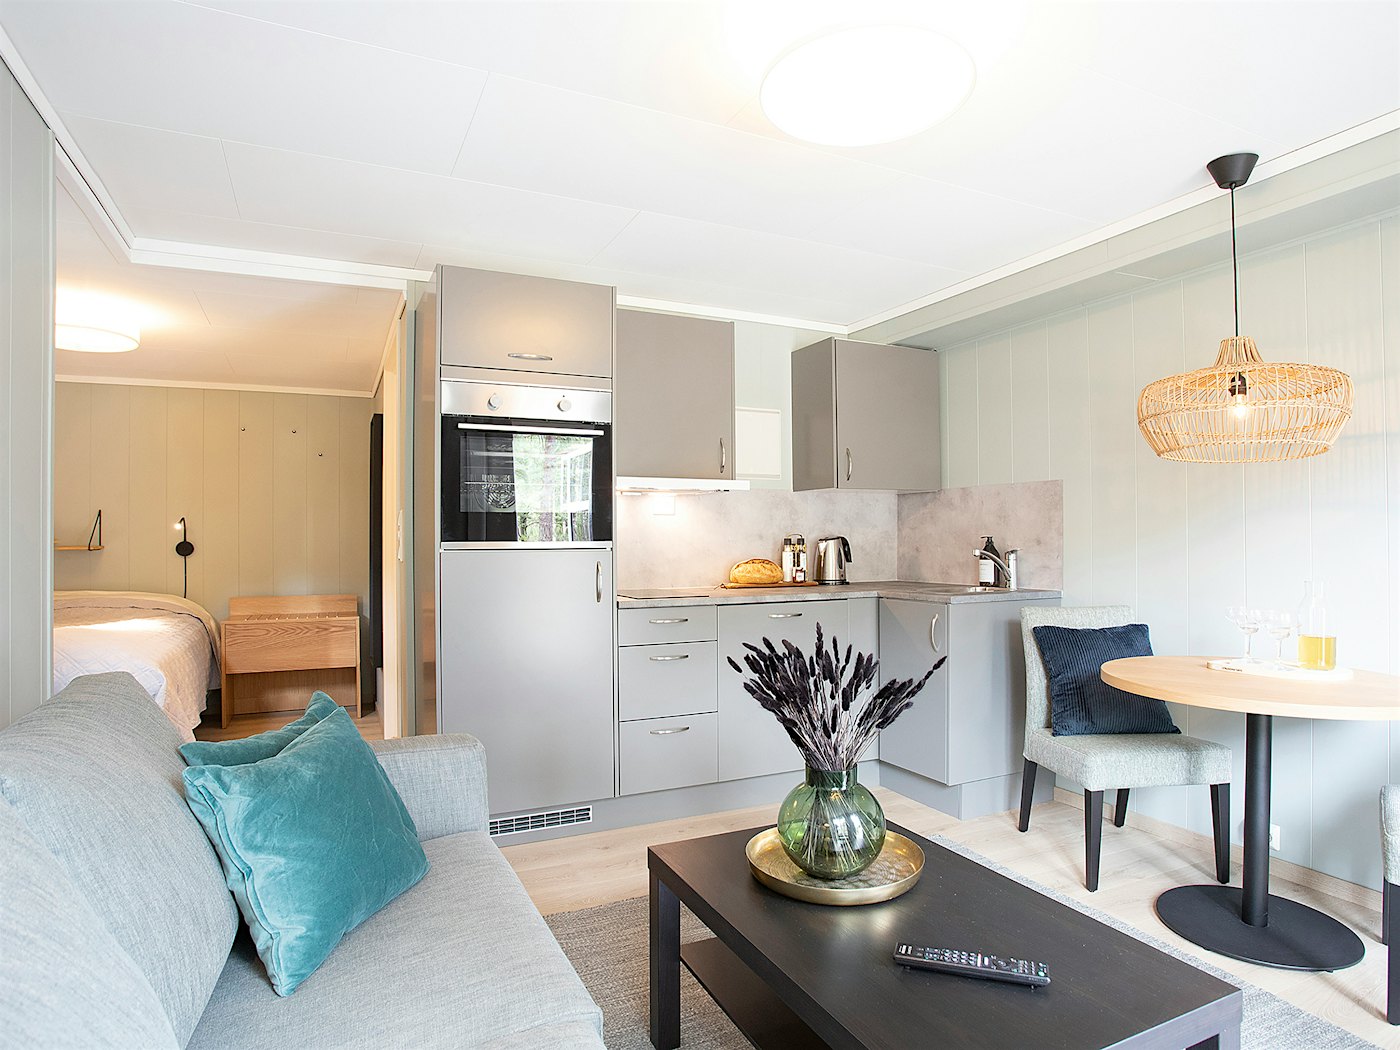 Helles und modernes Studio-Apartment mit Küchenzeile, Esstisch, Sofa und Couchtisch. Doppelbett im Hintergrund. Foto